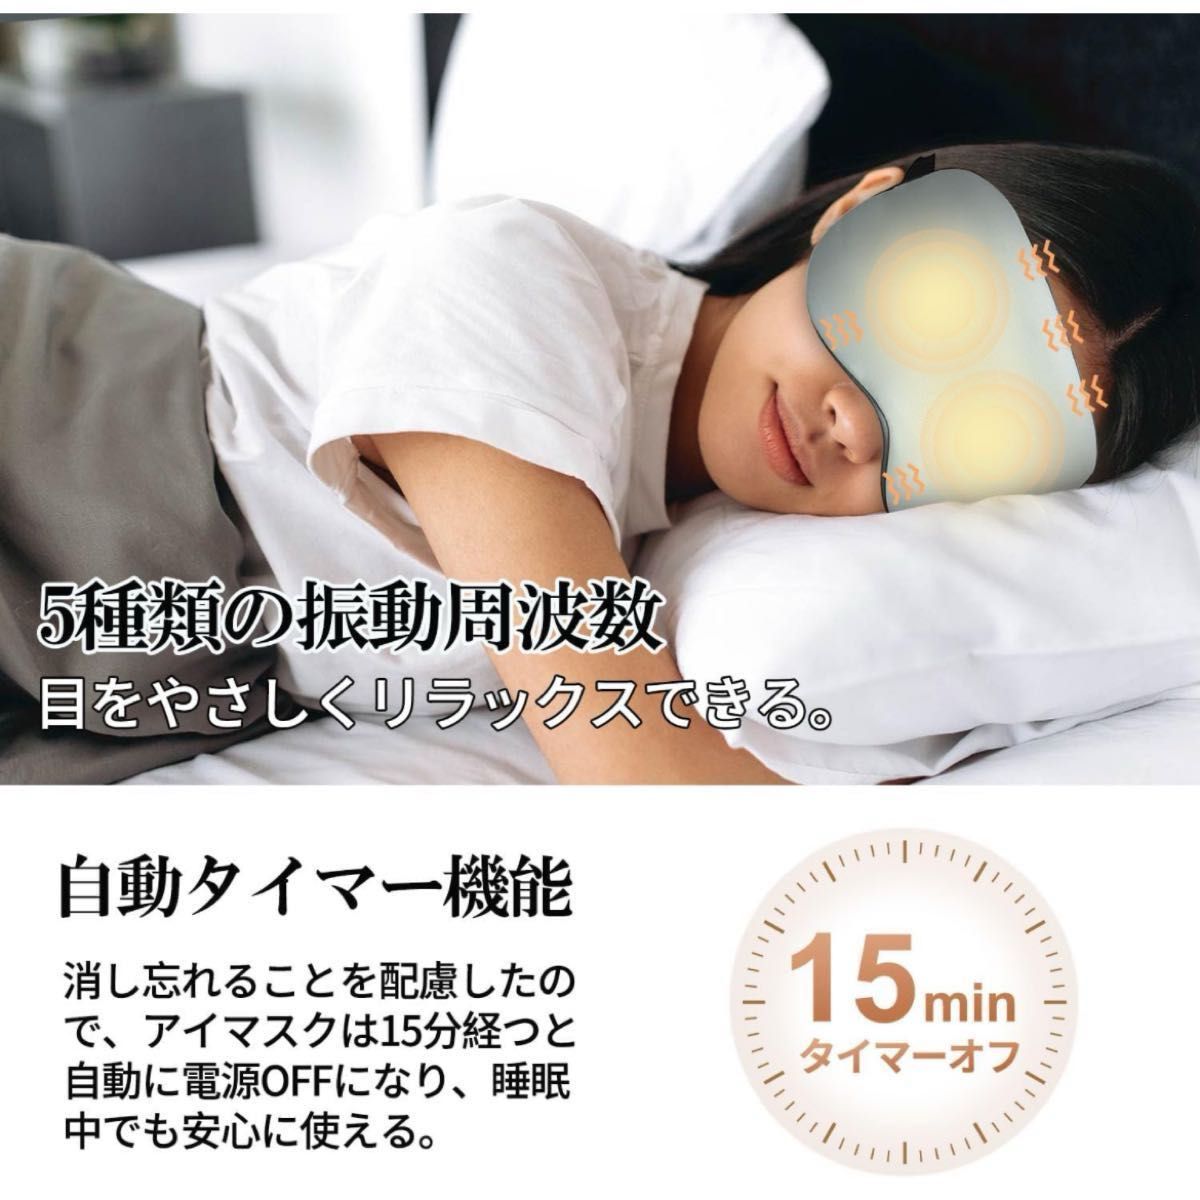 【新品】ホットアイマスク USB充電 コードレス 3段階 快眠 温冷両用 安眠グッズ 睡眠不足 目の疲れ 旅行 昼寝 安眠マスク